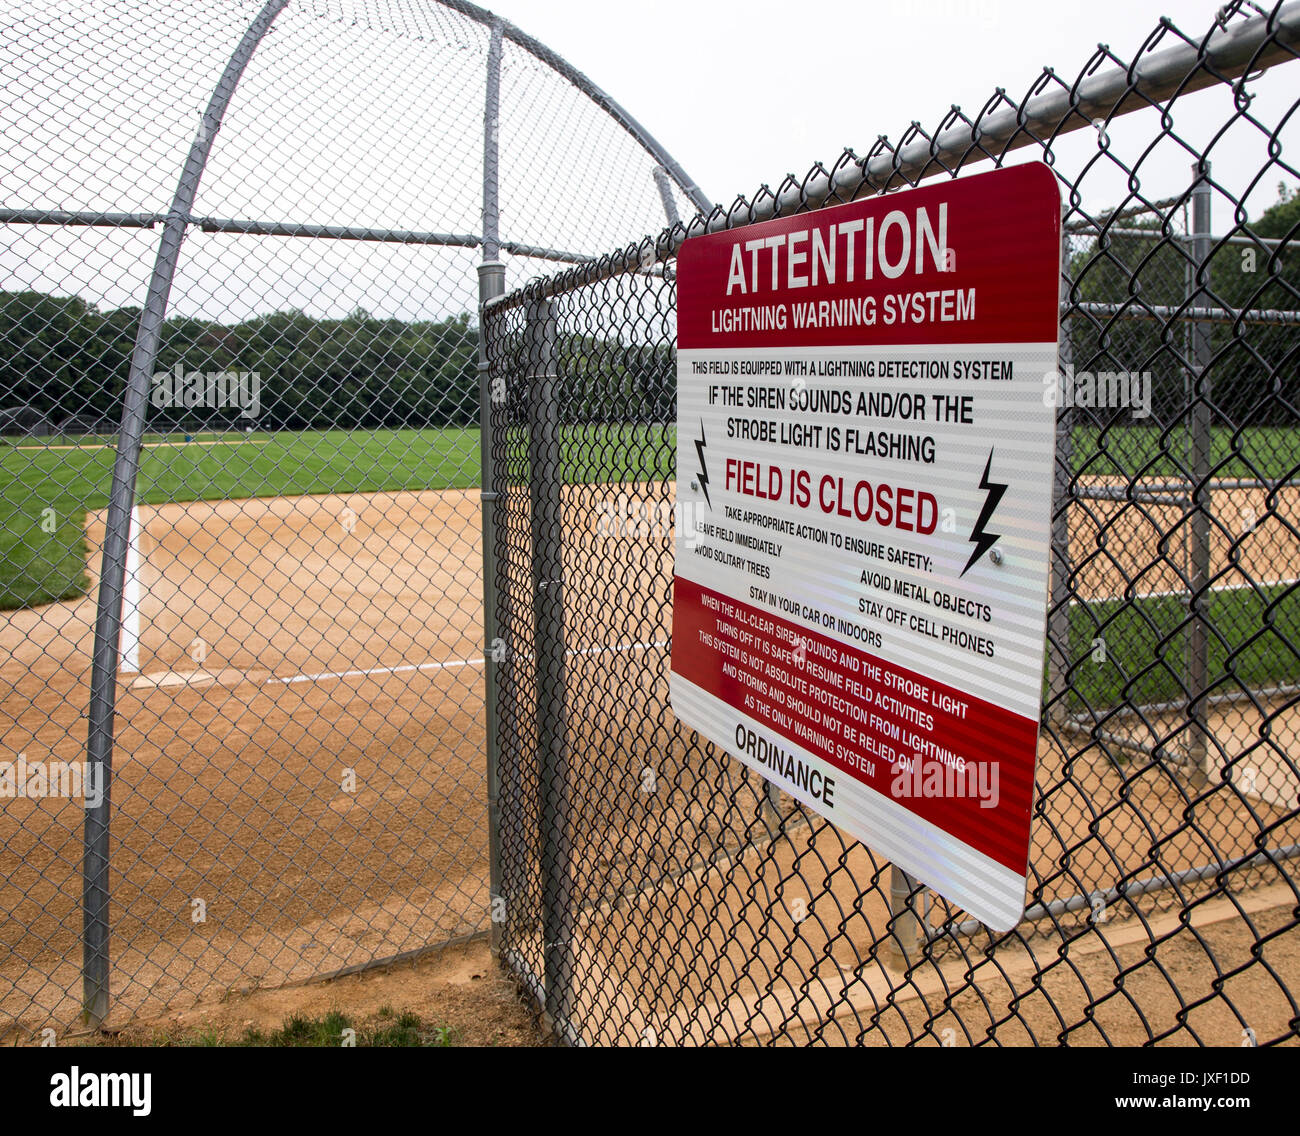 Ein Blitz warning system Zeichen an einem baseballfeld Stockfoto